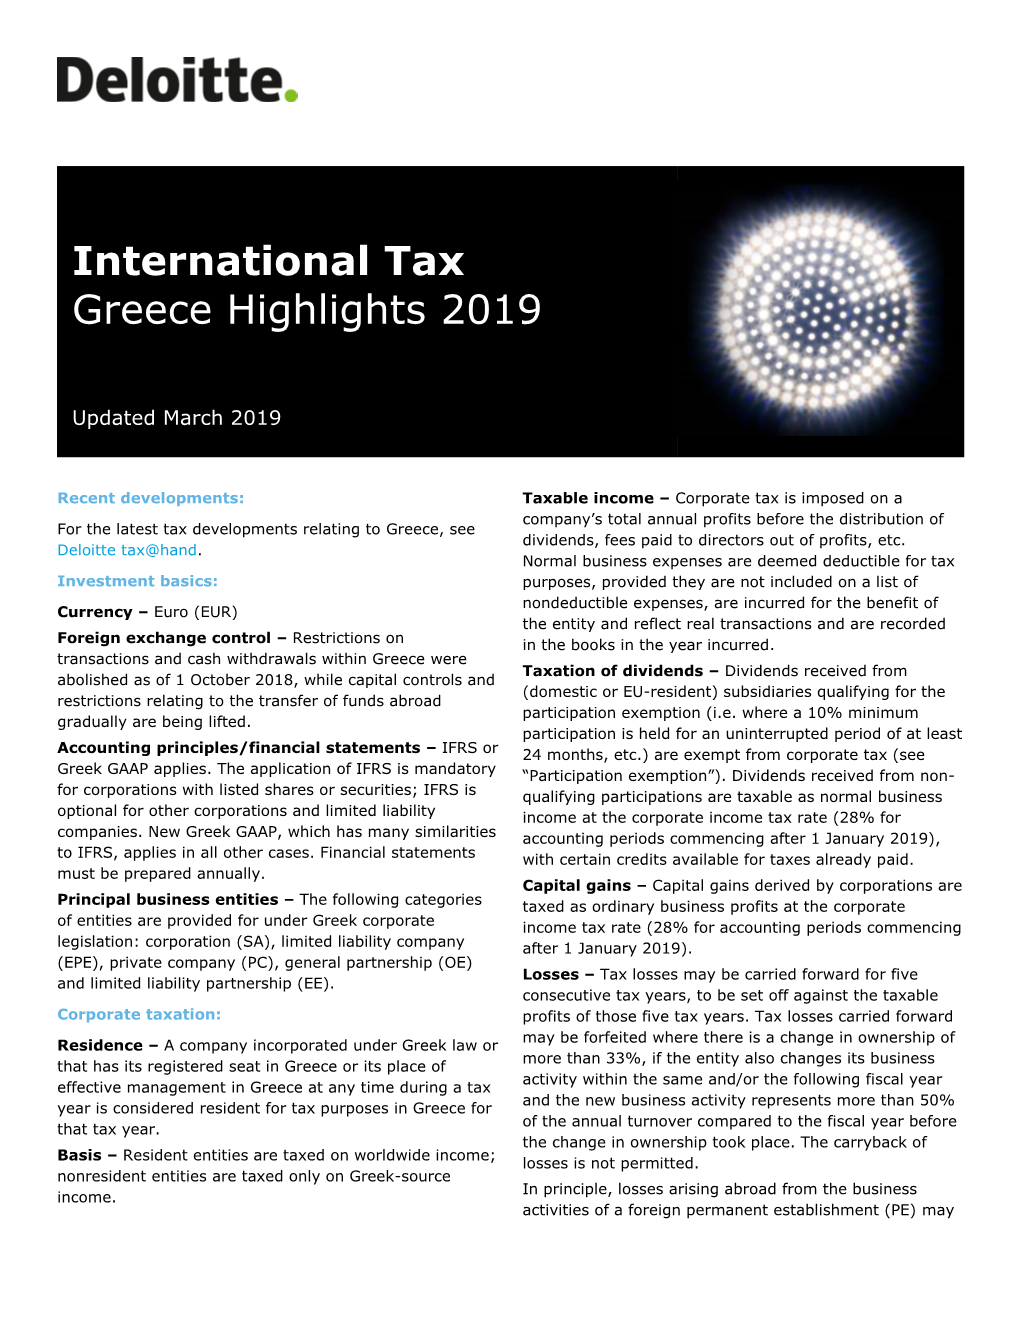 International Tax Greece Highlights 2019